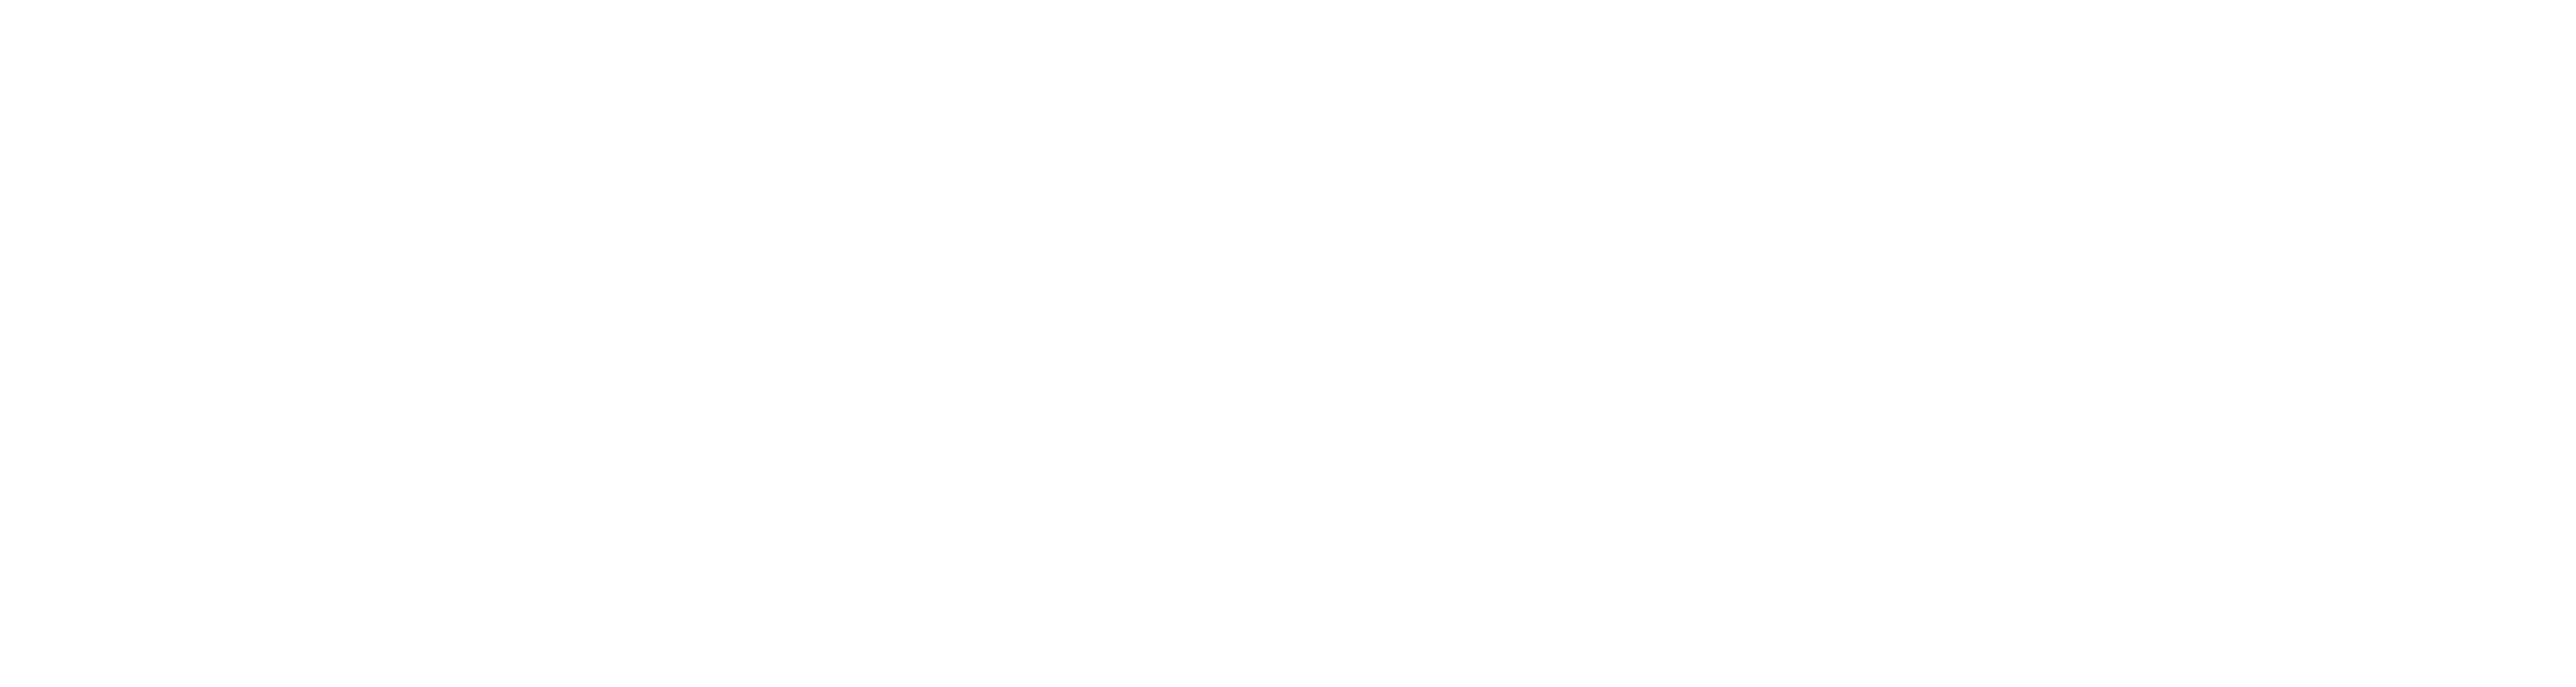 NewsWatch - Power Outage